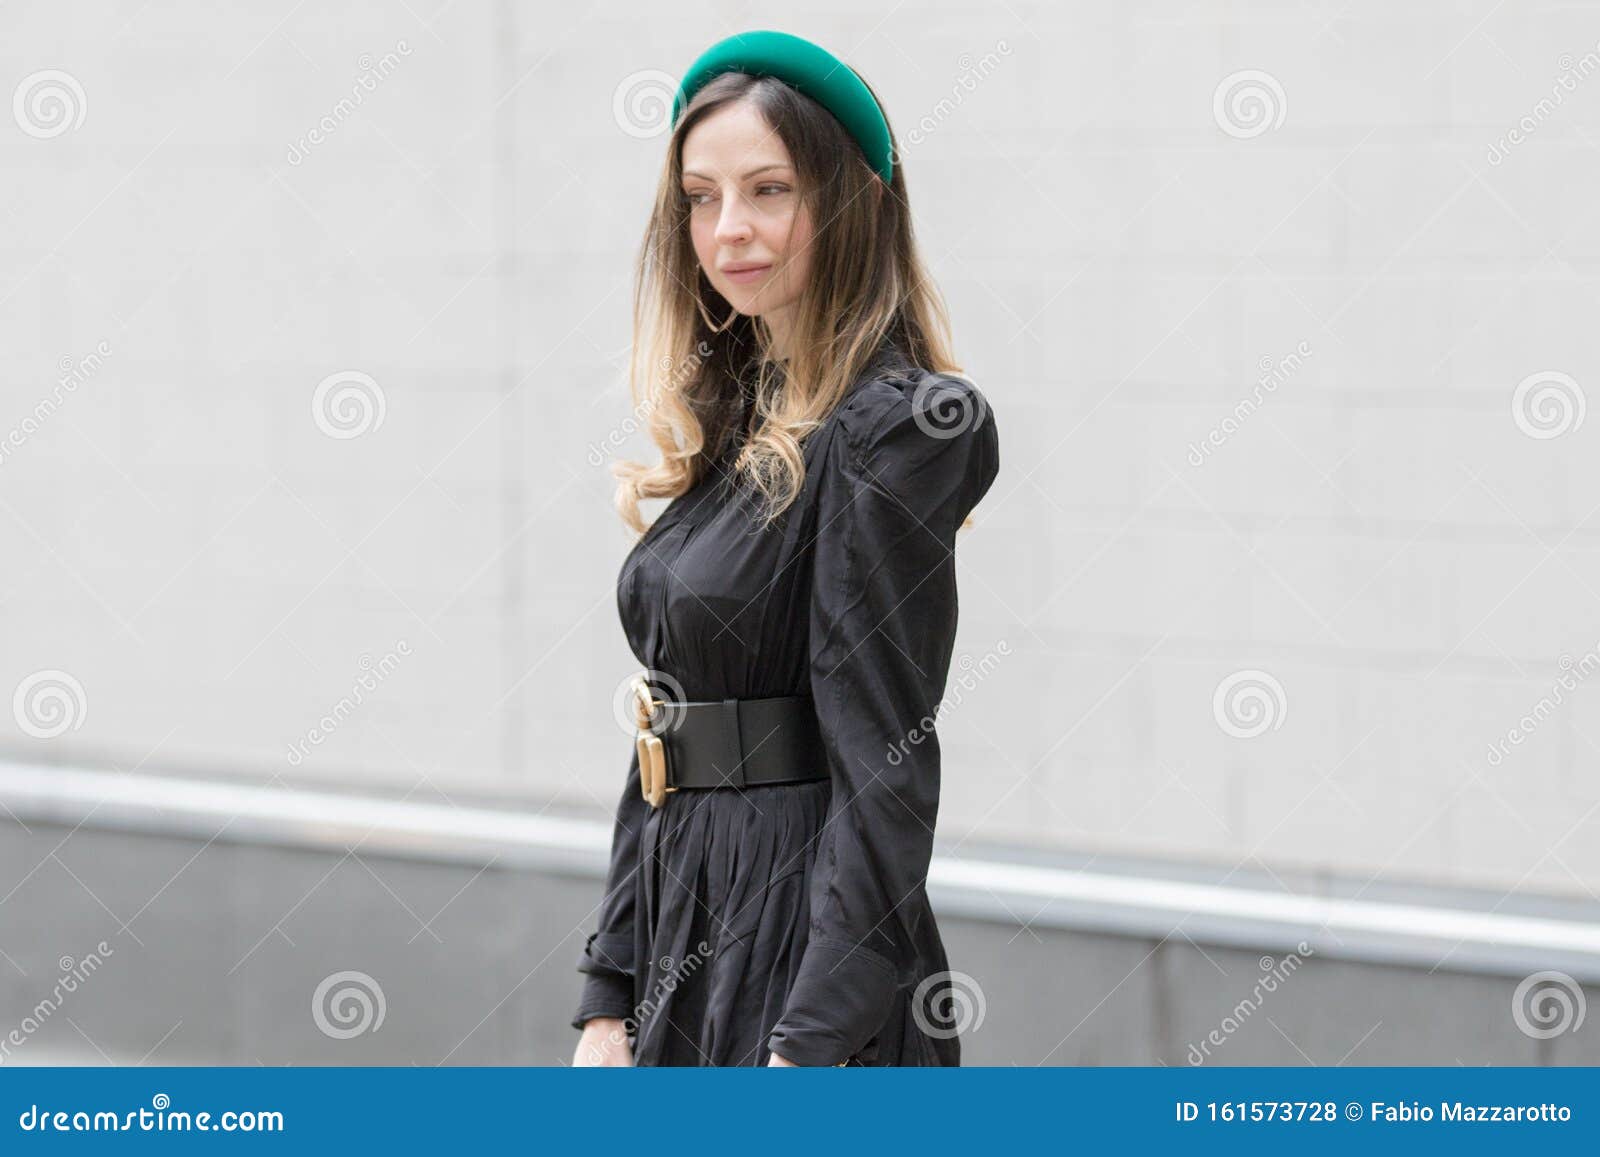 Lleva Un Vestido Negro, Un Cinturón Gucci Negro Y Un Clip Pelo Verde de archivo editorial - Imagen de pelo, ocasional: 161573728